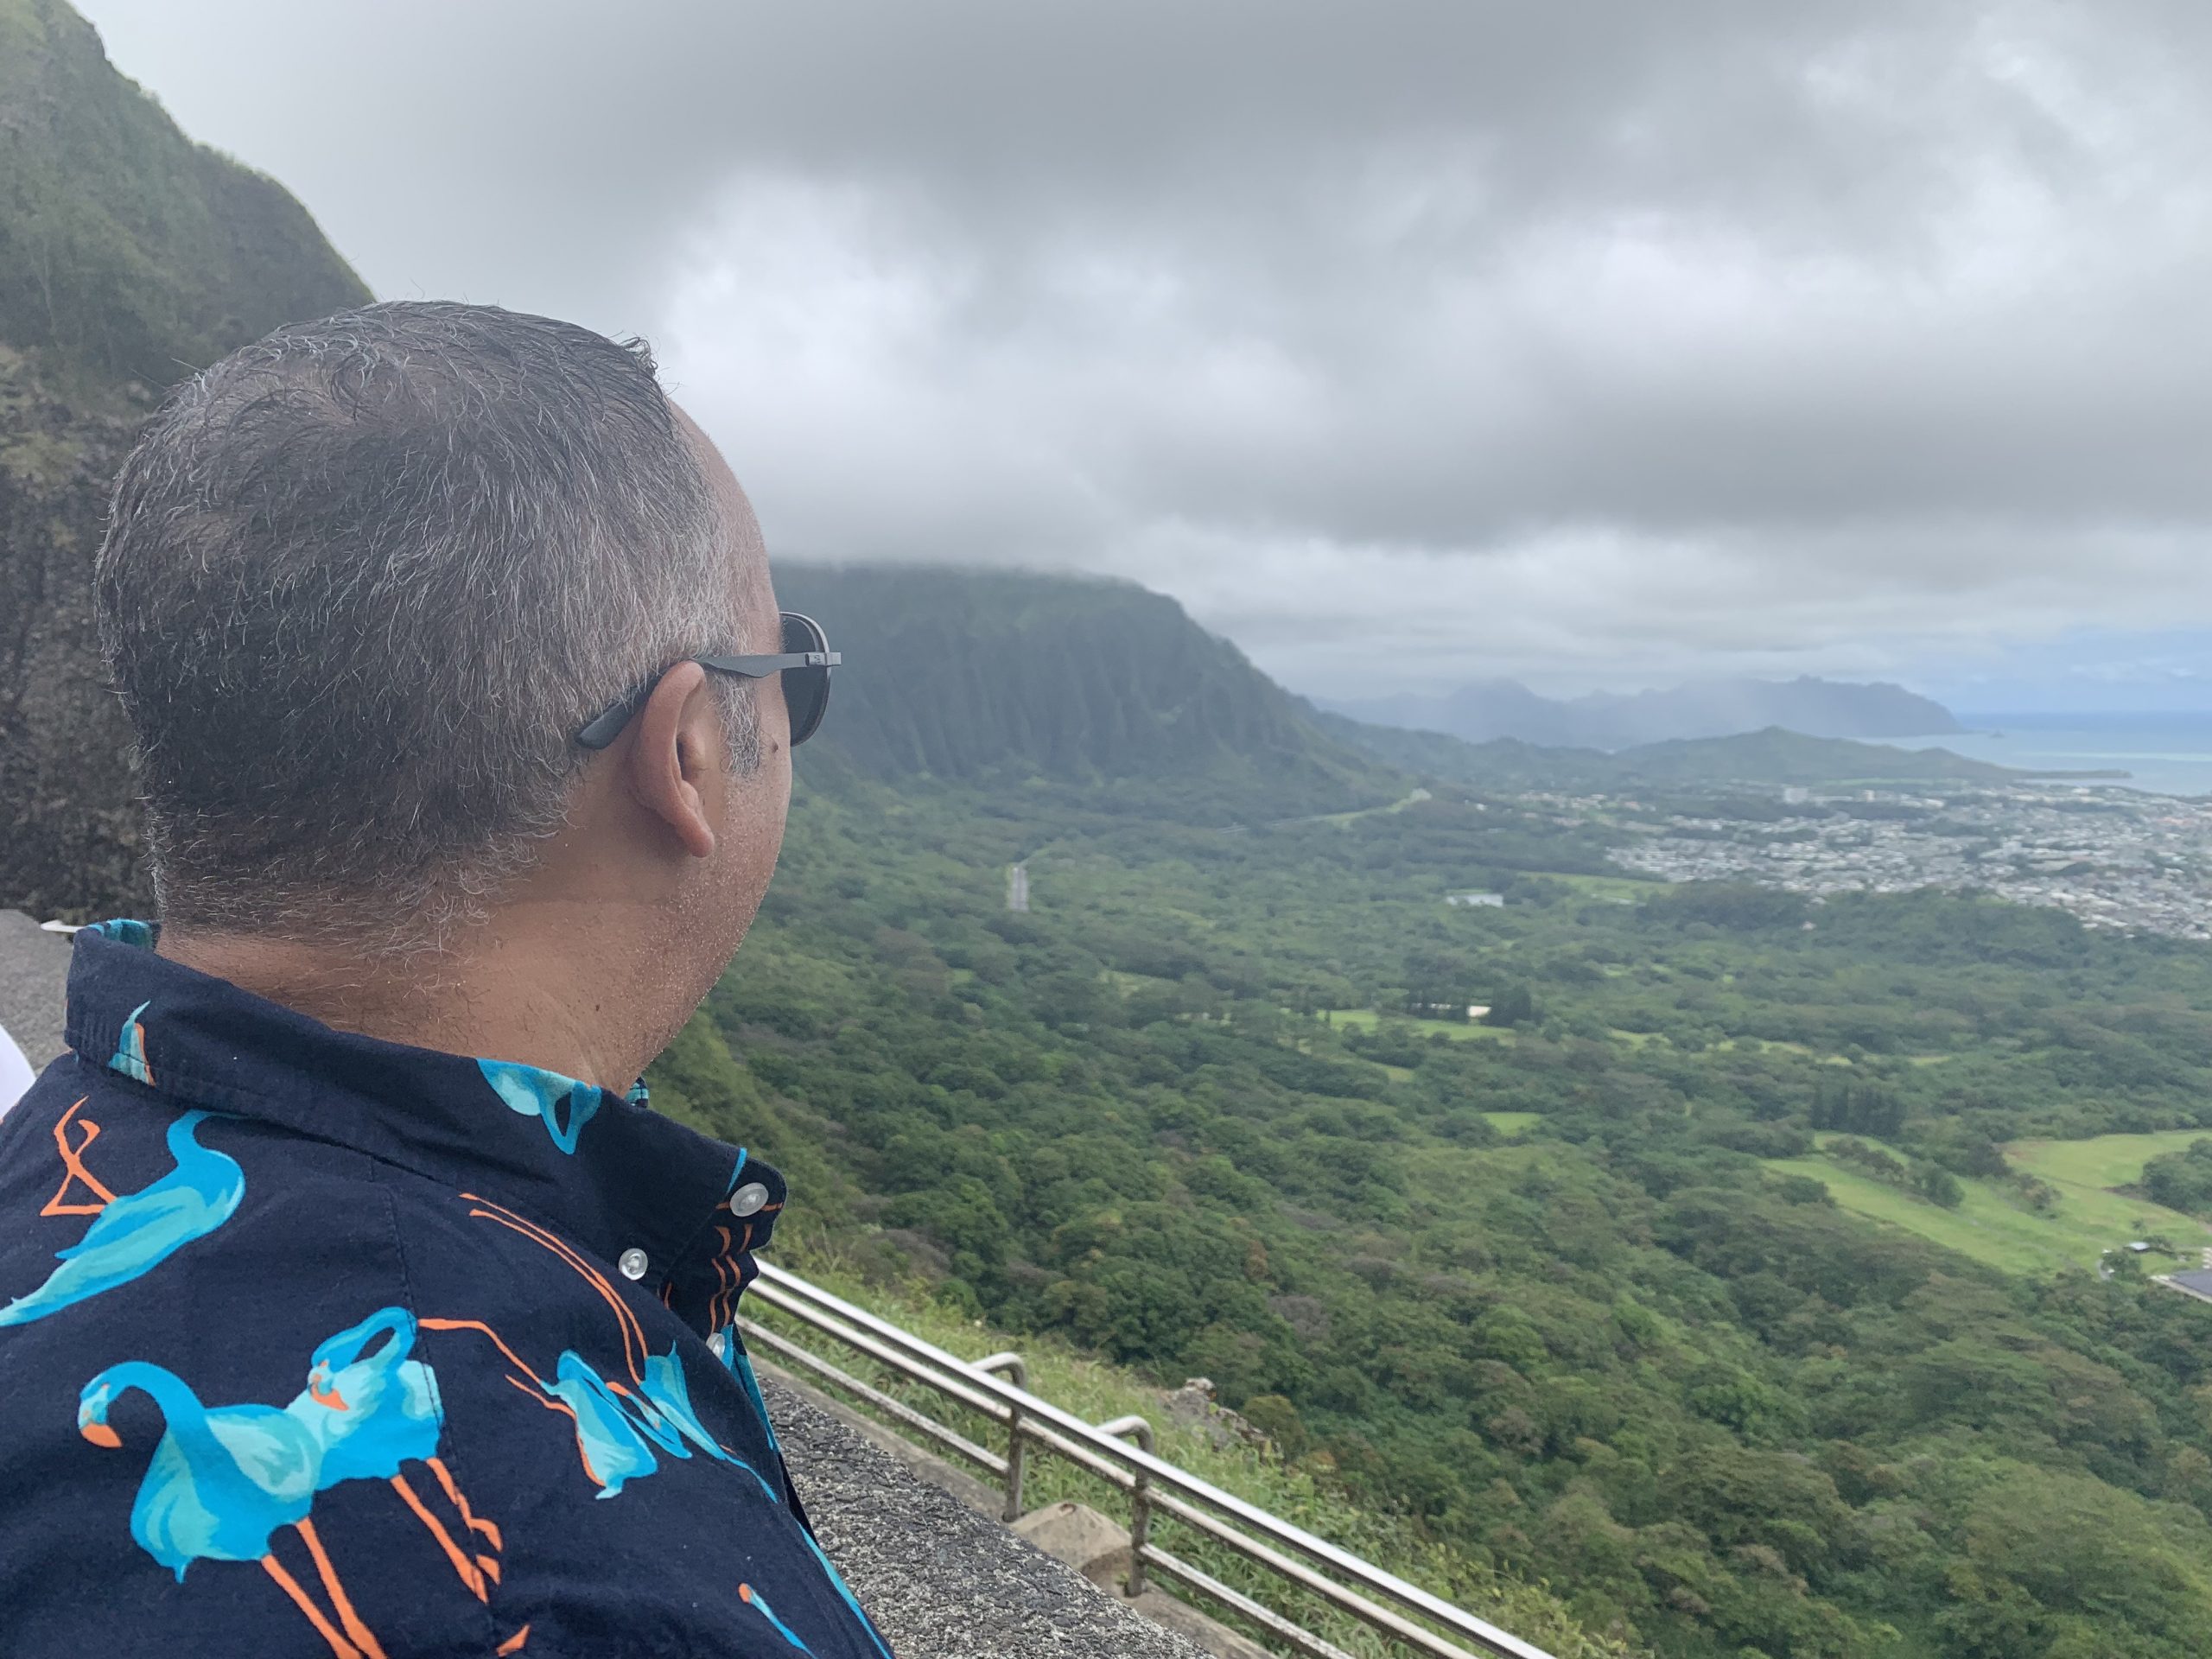 pali lookout Oahu hawaii